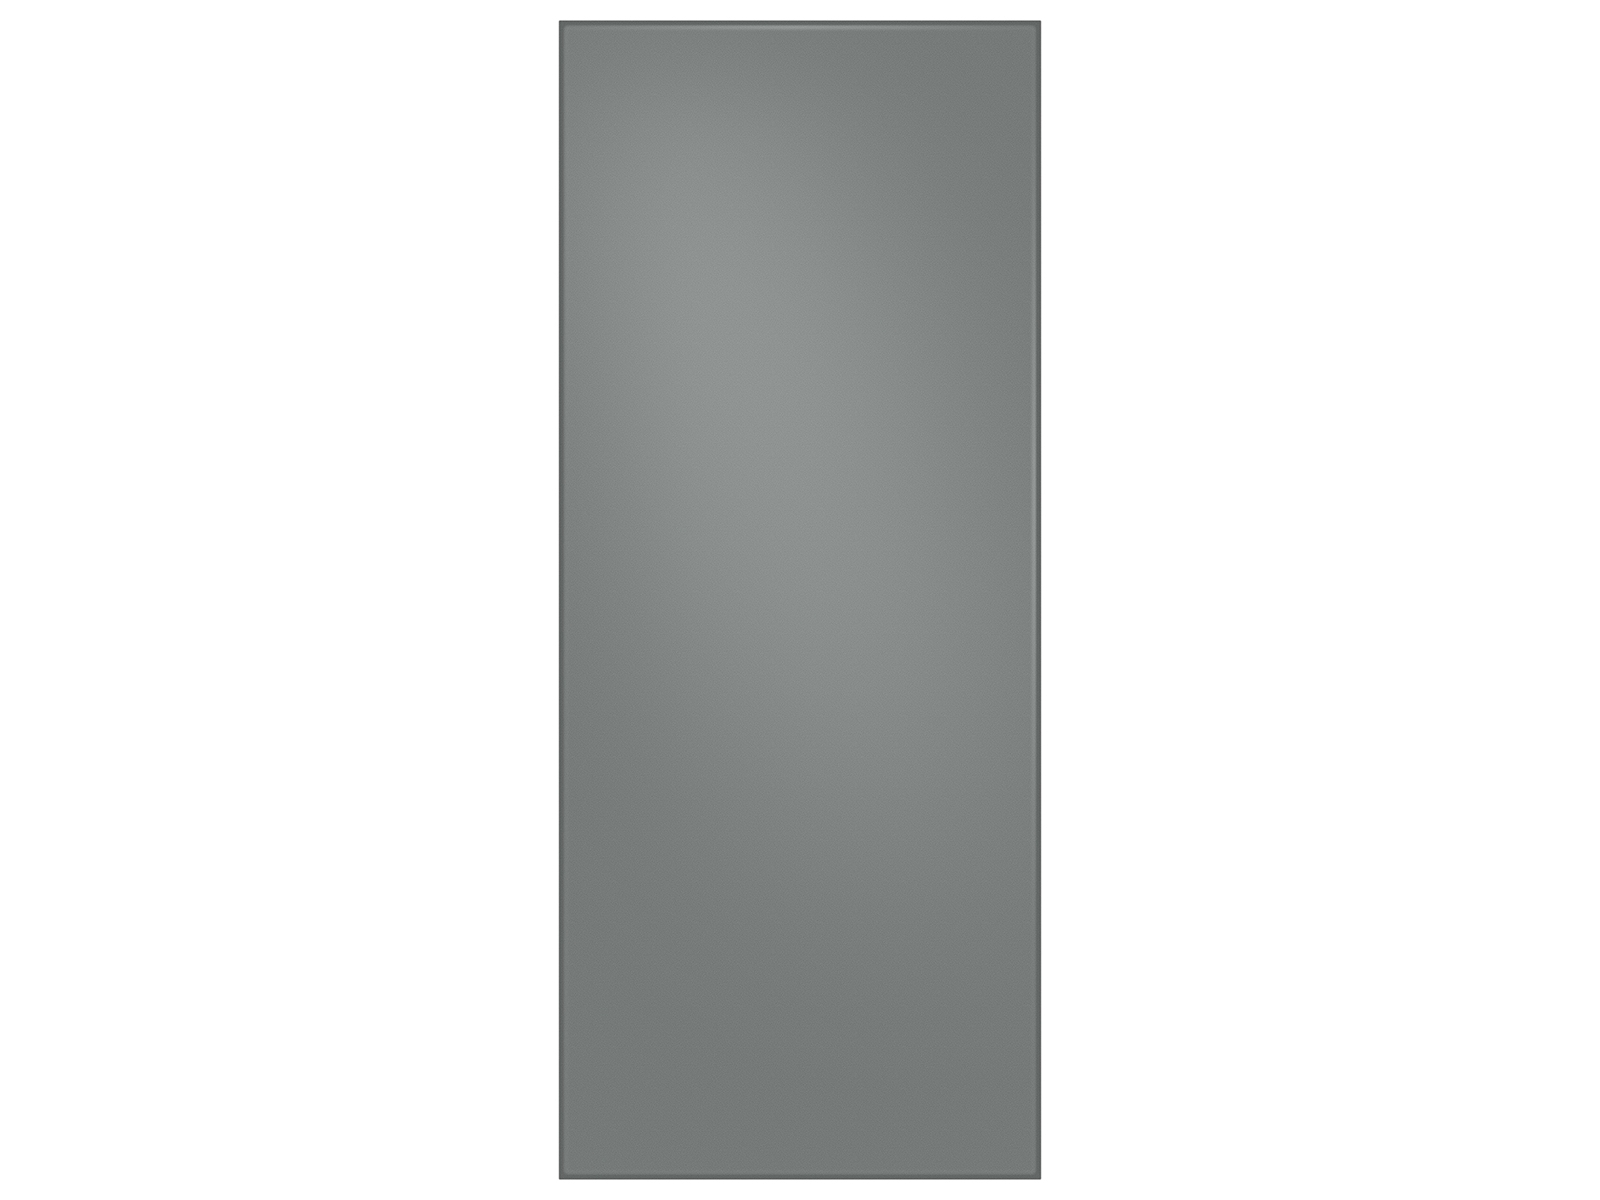 Samsung Bespoke 3-Door French Door Refrigerator Panel in Matte in Grey Glass - Top Panel(RA-F18DU331/AA)